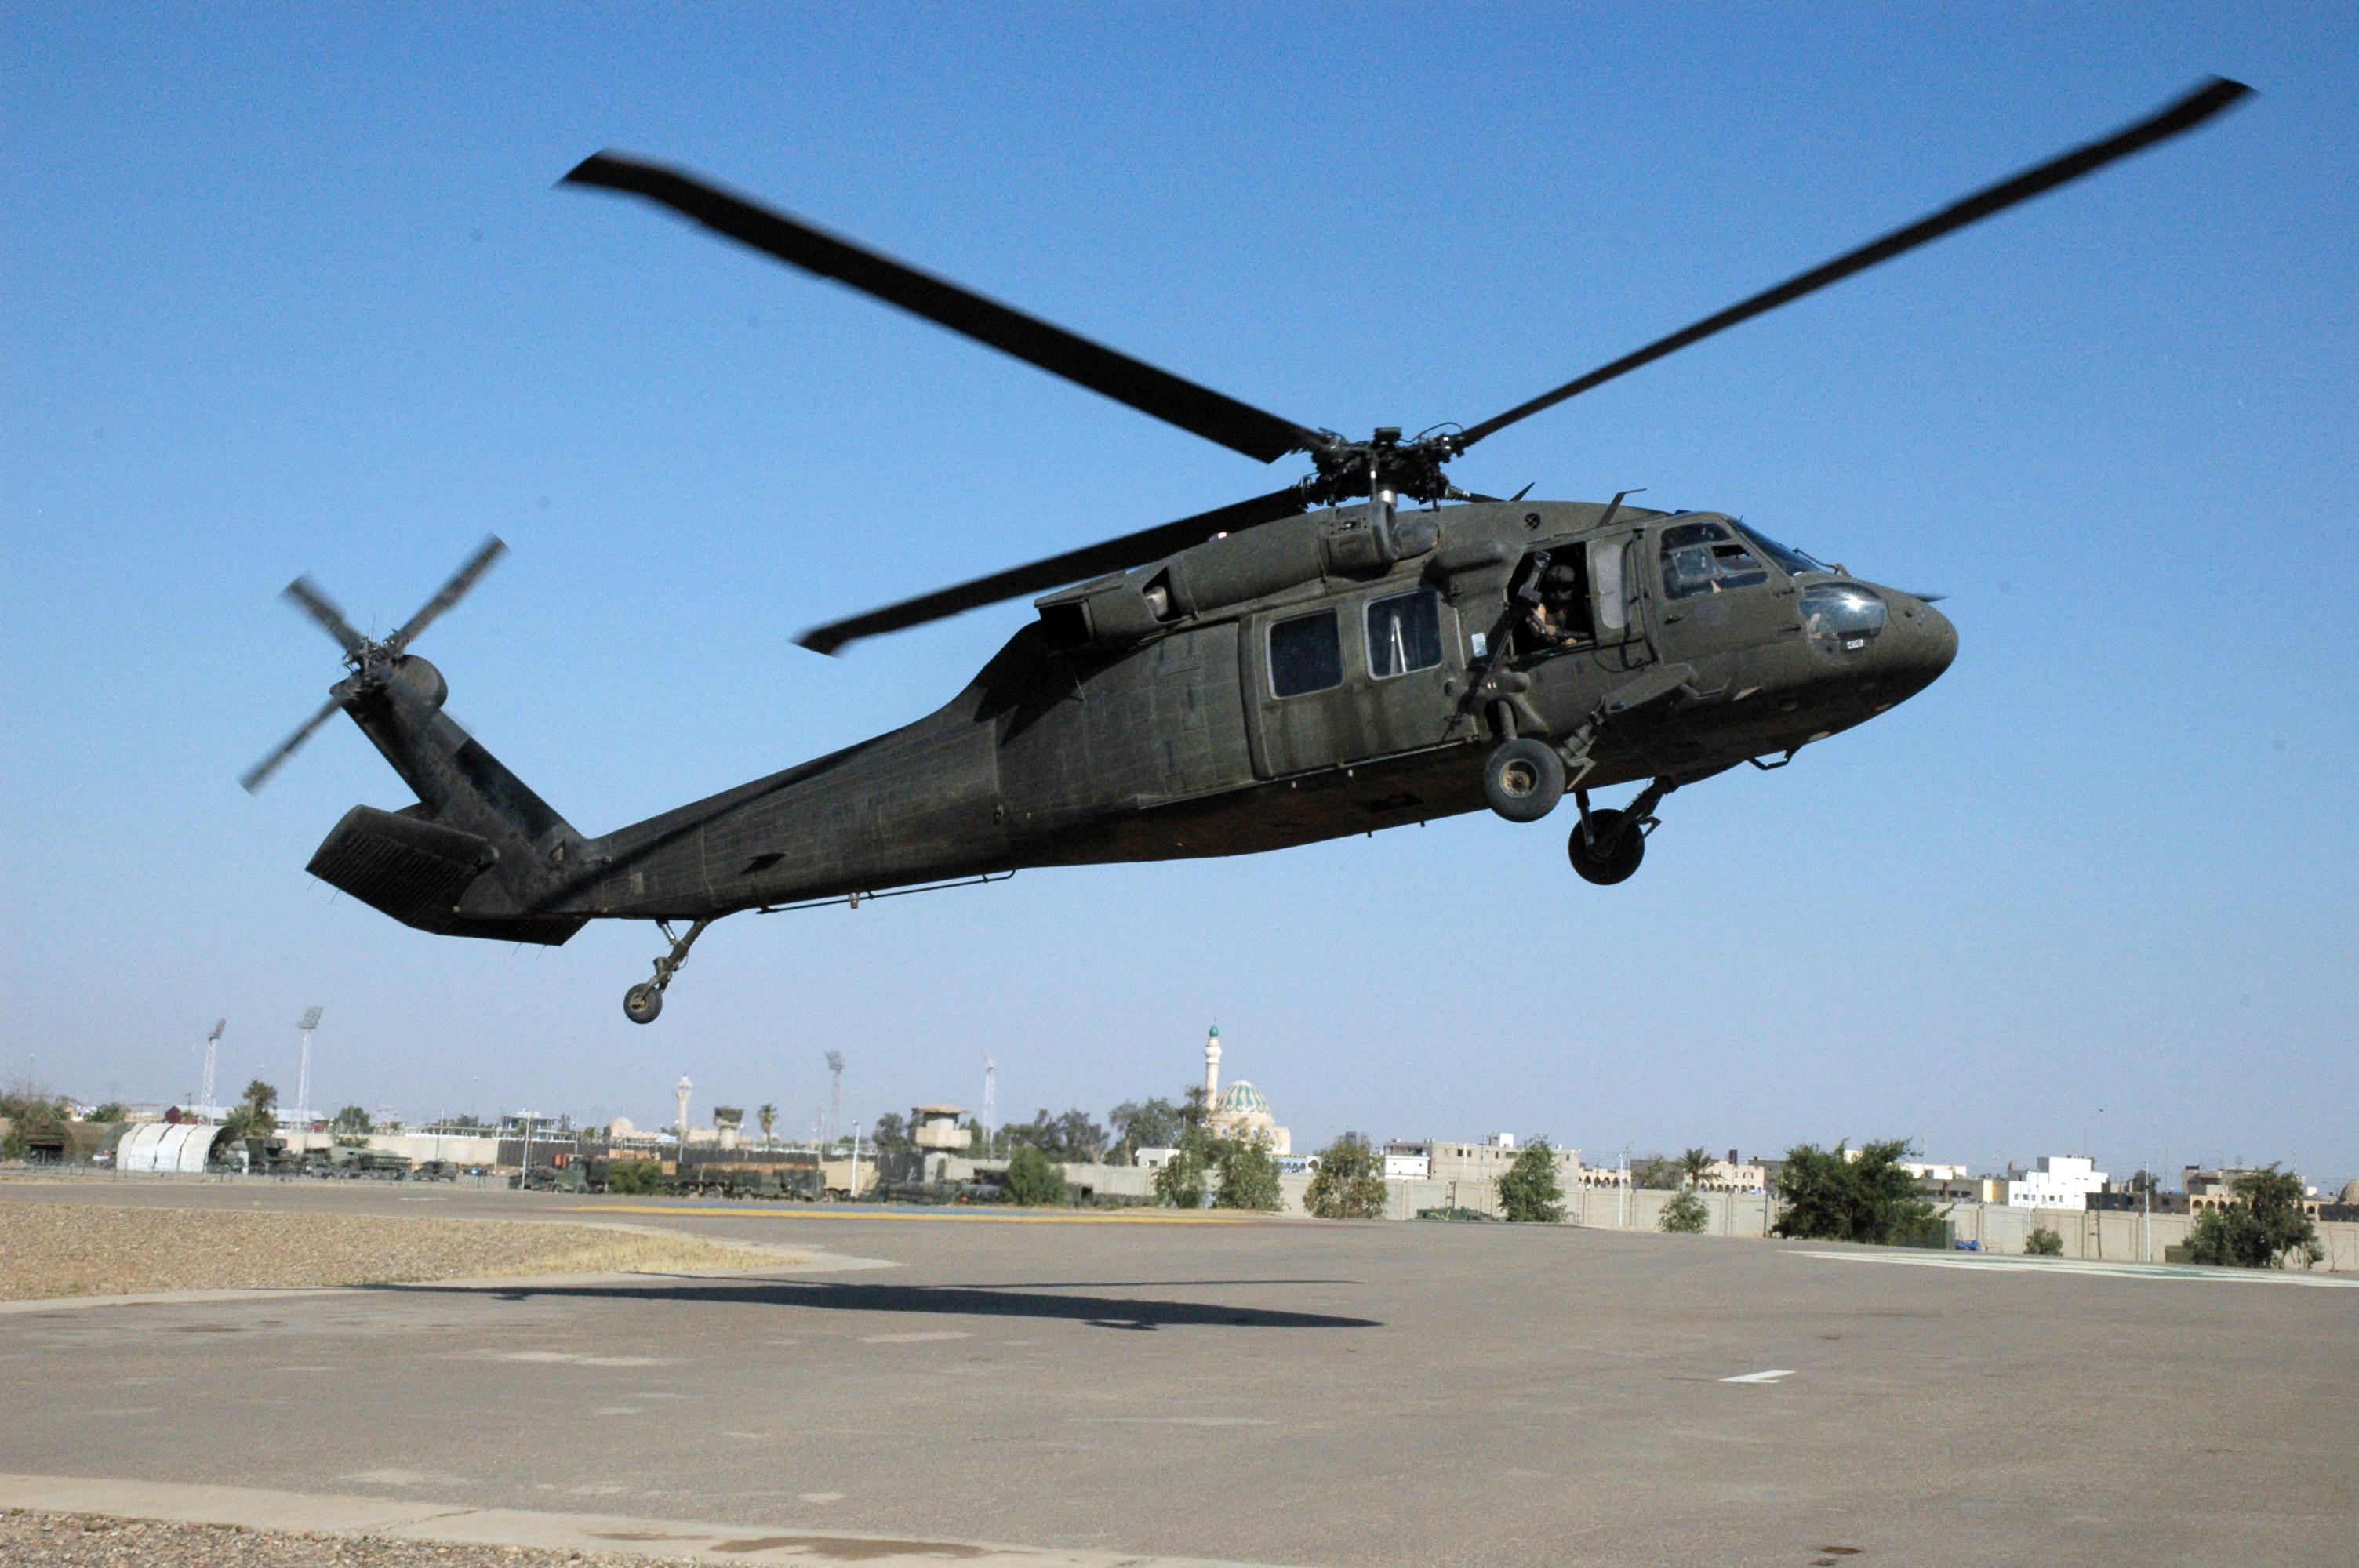 Американские военные вертолеты. Uh-60 Black Hawk. Вертолёт uh-60m Black Hawk. Sikorsky uh-60 Black Hawk вертолет. Вертолет Блэк Хоук.